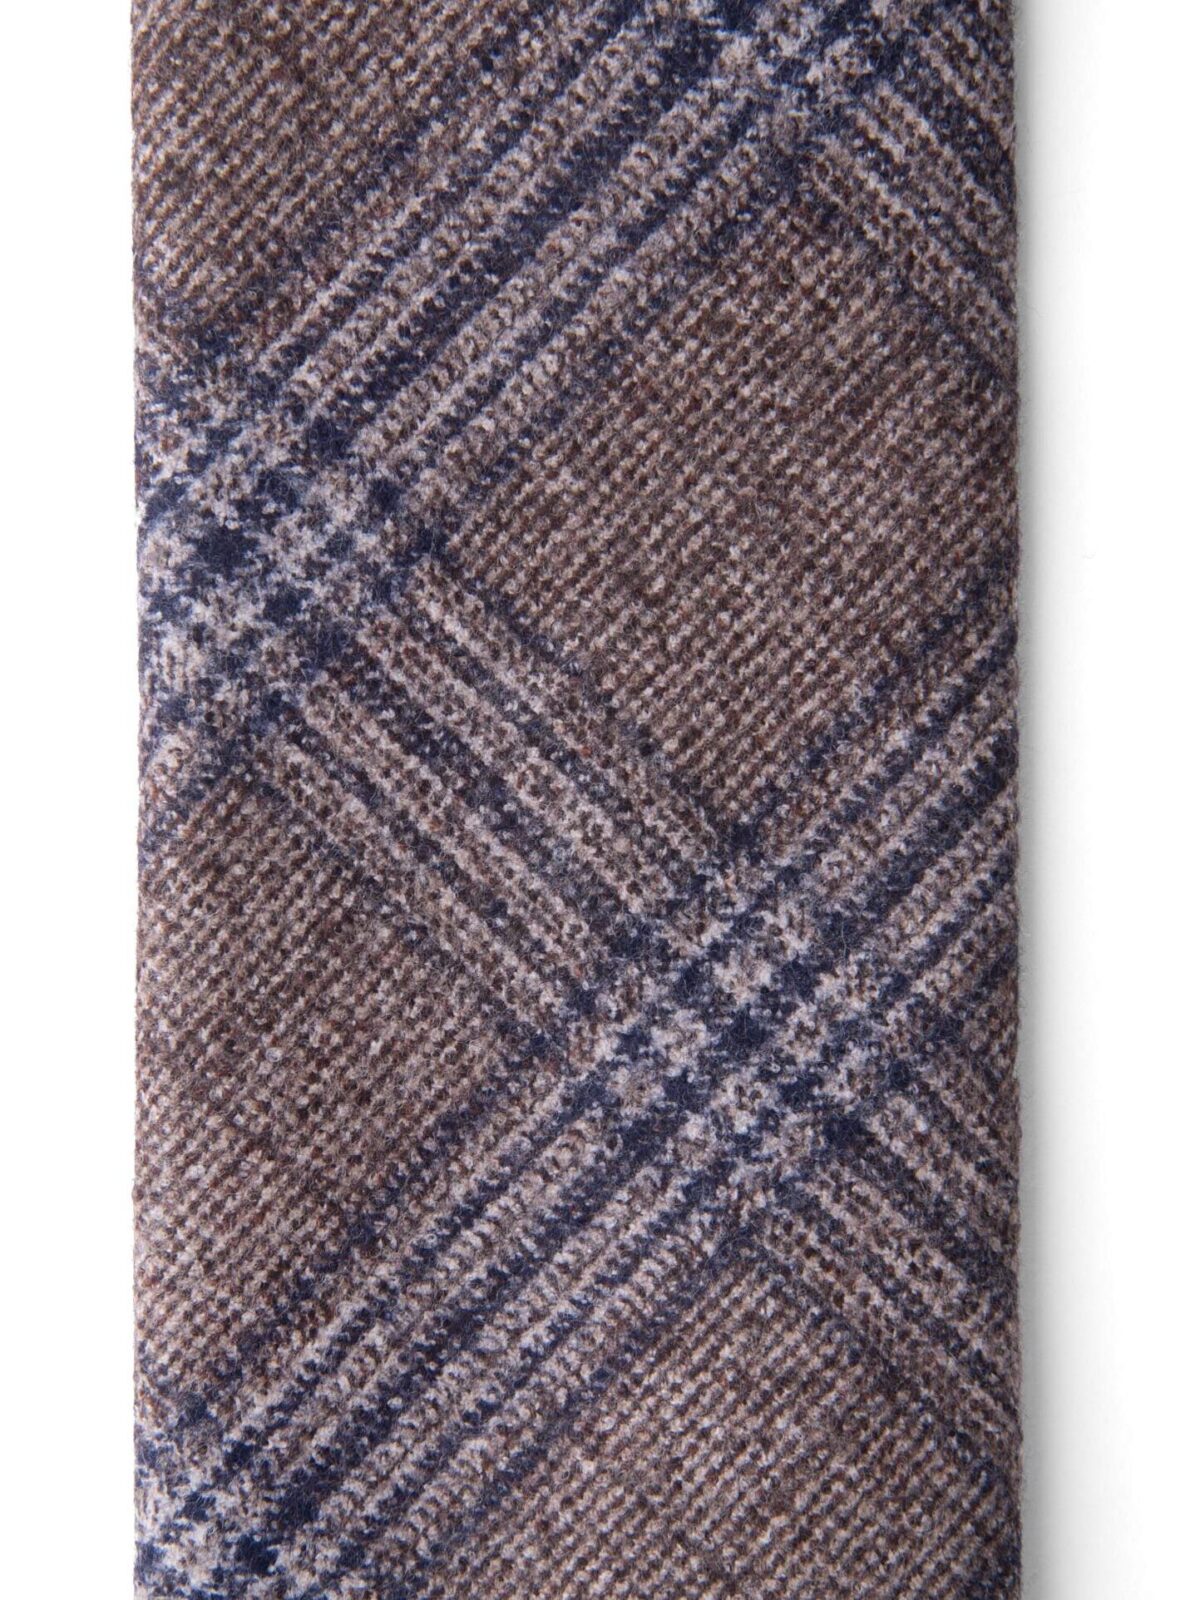 Beige and Navy Wool Plaid Tie